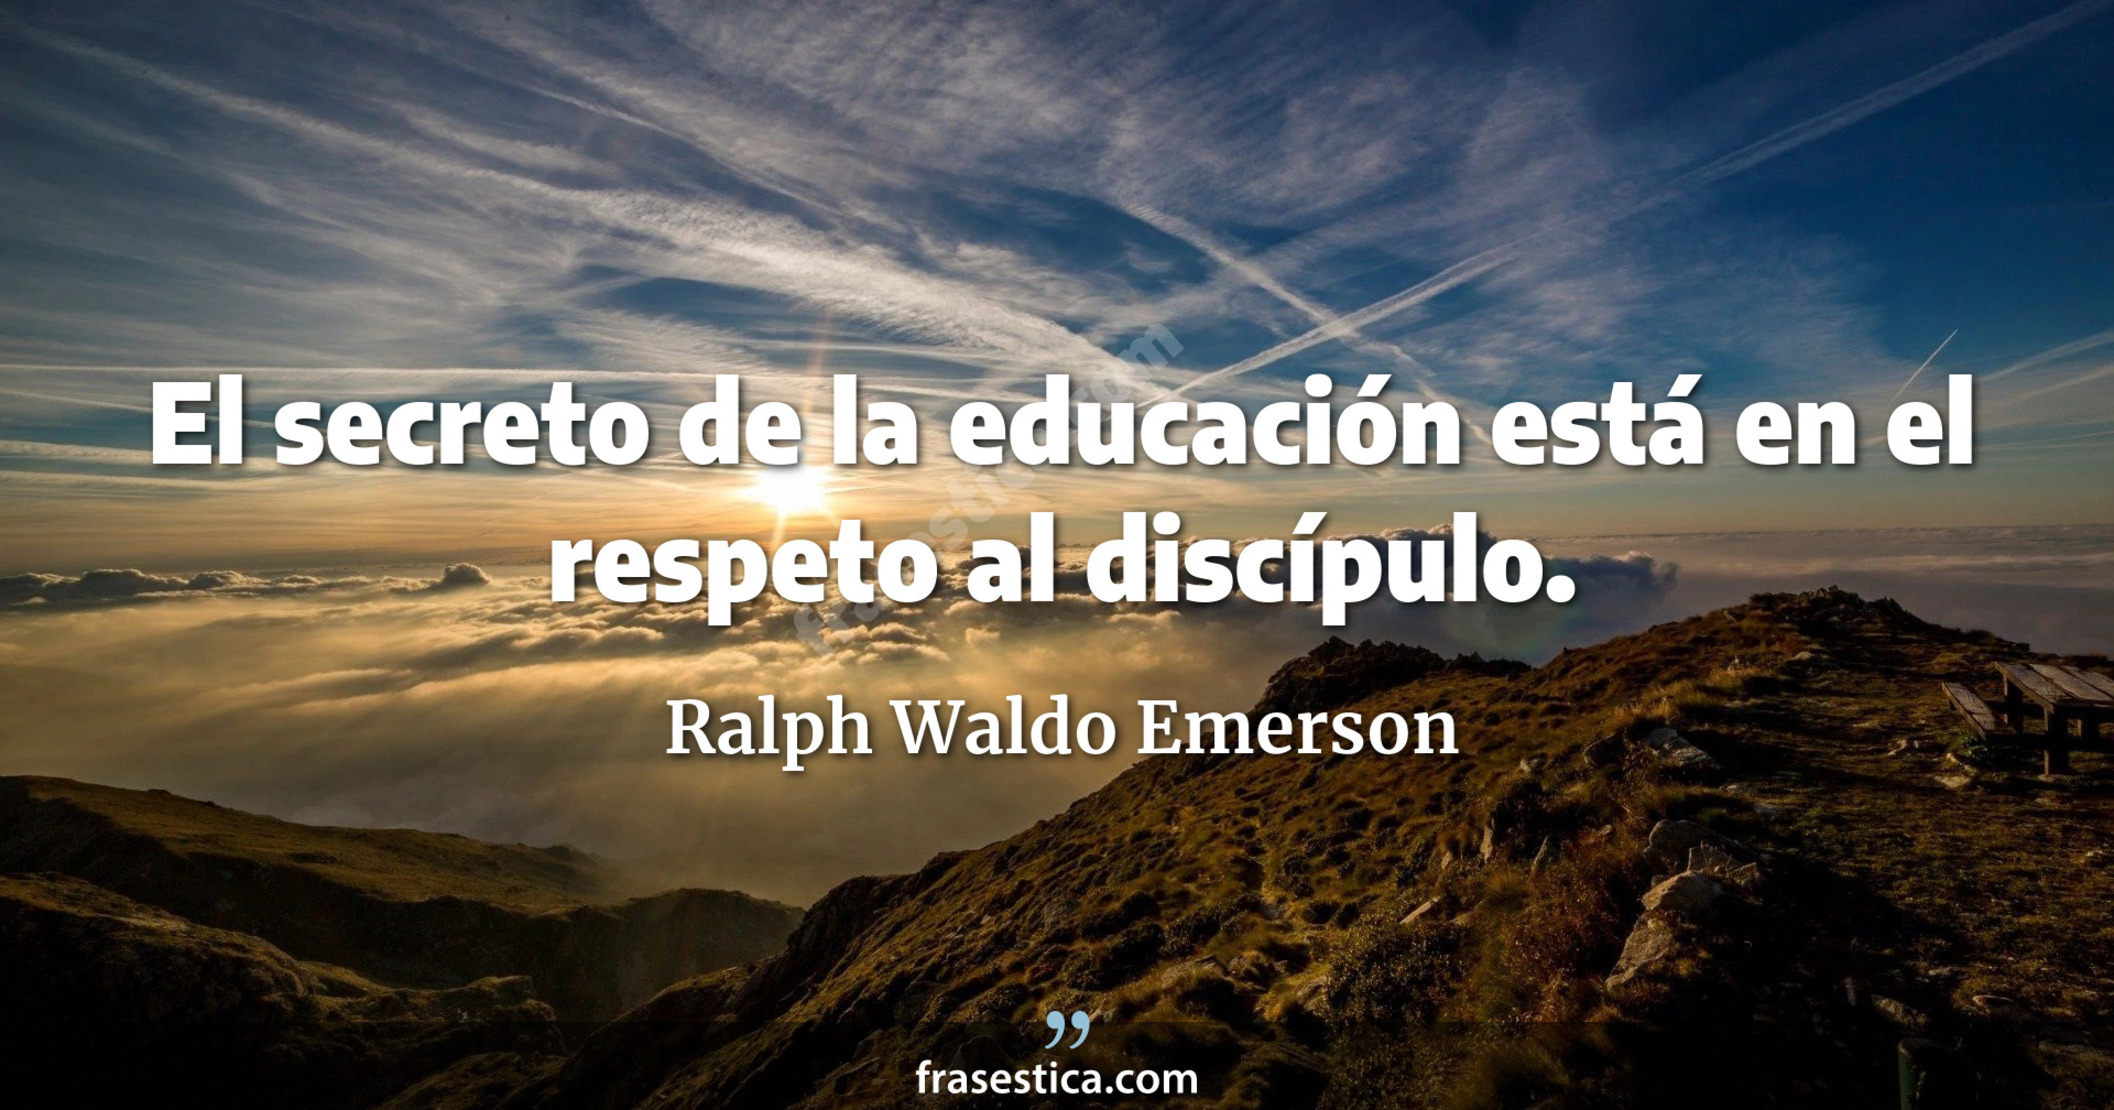 El secreto de la educación está en el respeto al discípulo. - Ralph Waldo Emerson